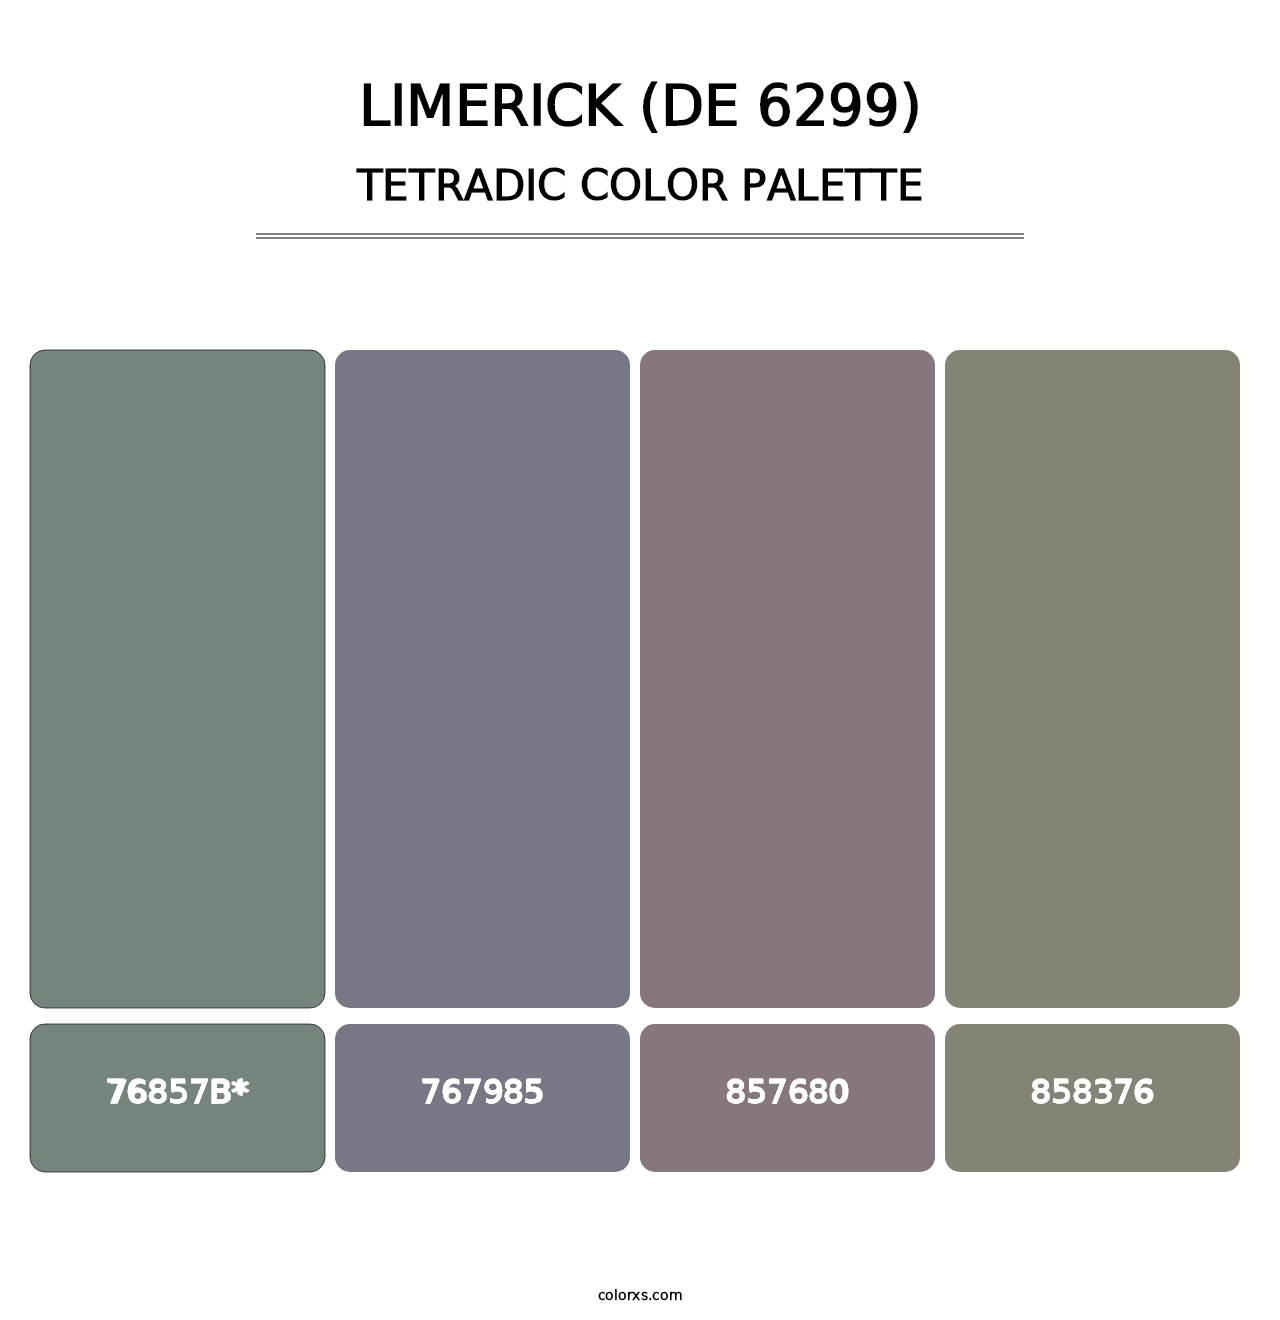 Limerick (DE 6299) - Tetradic Color Palette